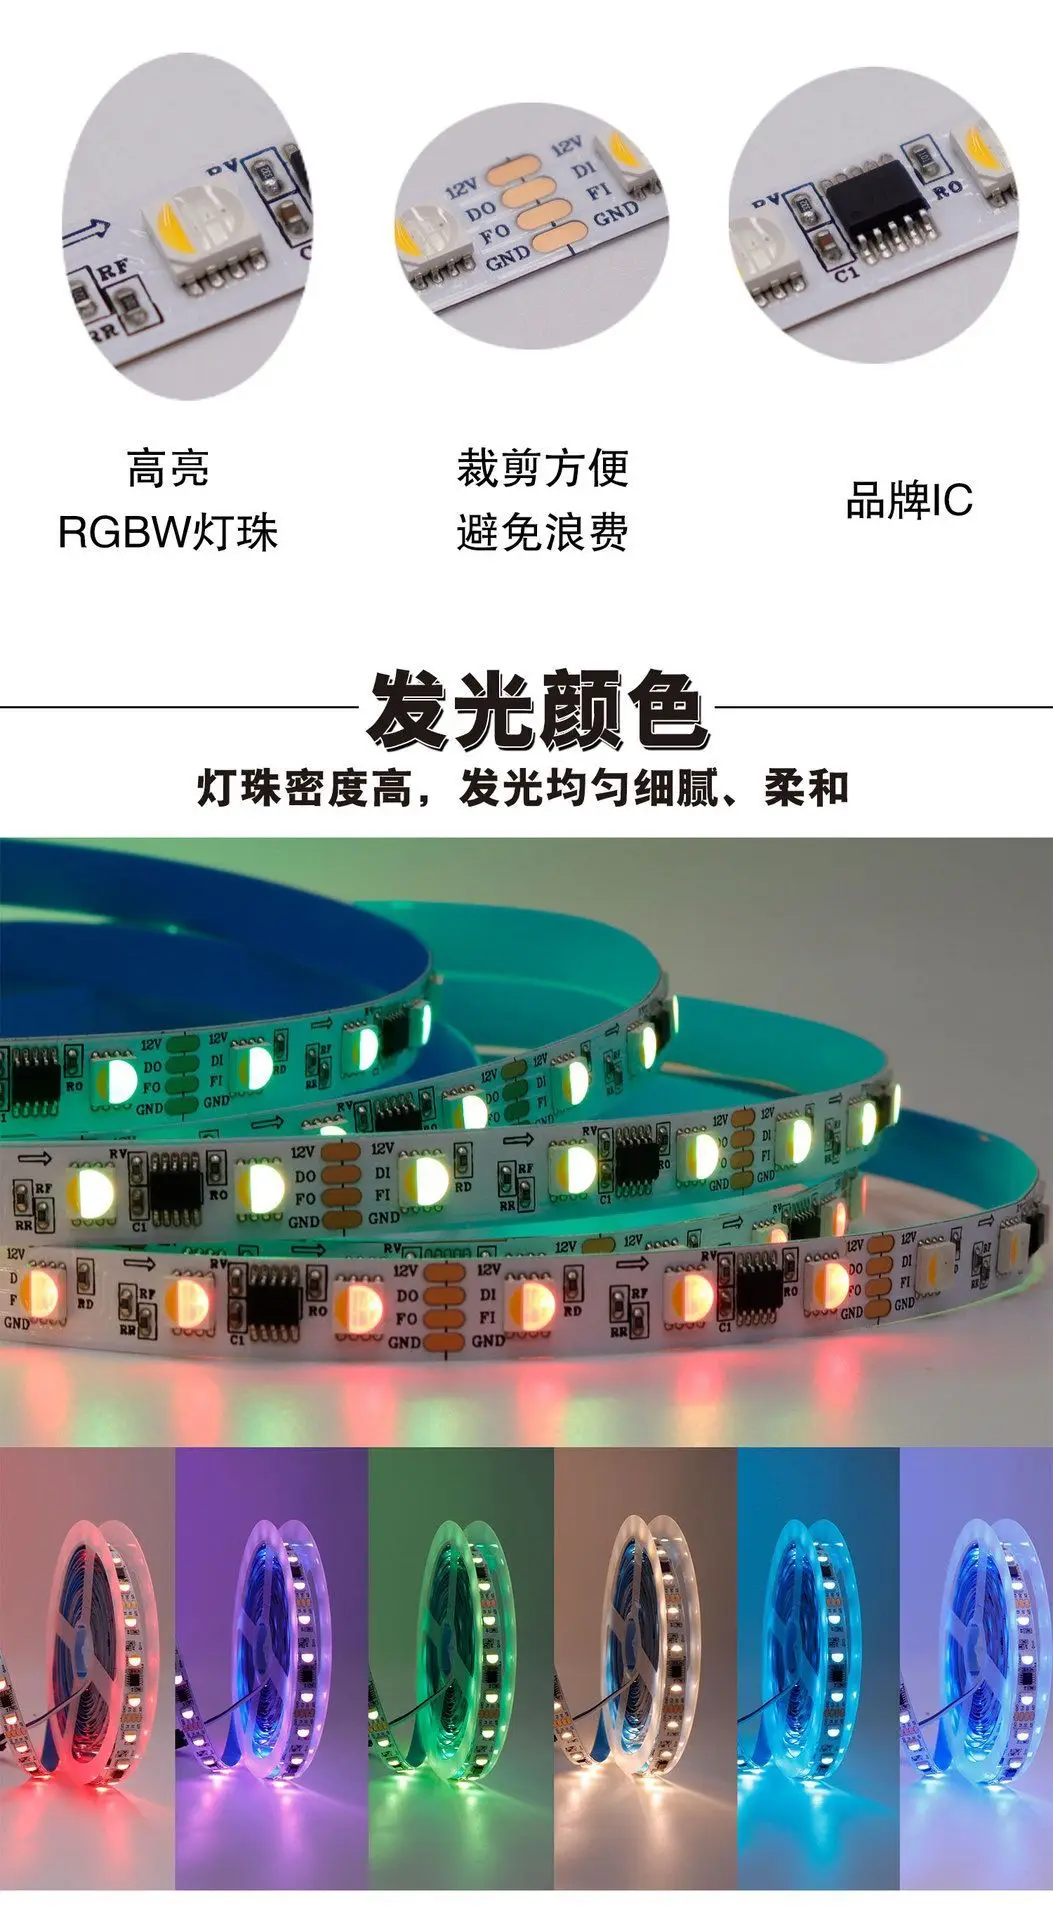 светодиодная лента RGBW FW1834 digital SPI 5m DC12V, 60 светодиодов/м, 20пикселей/м; БЕЛАЯ печатная плата; с резервным проводом передачи данных